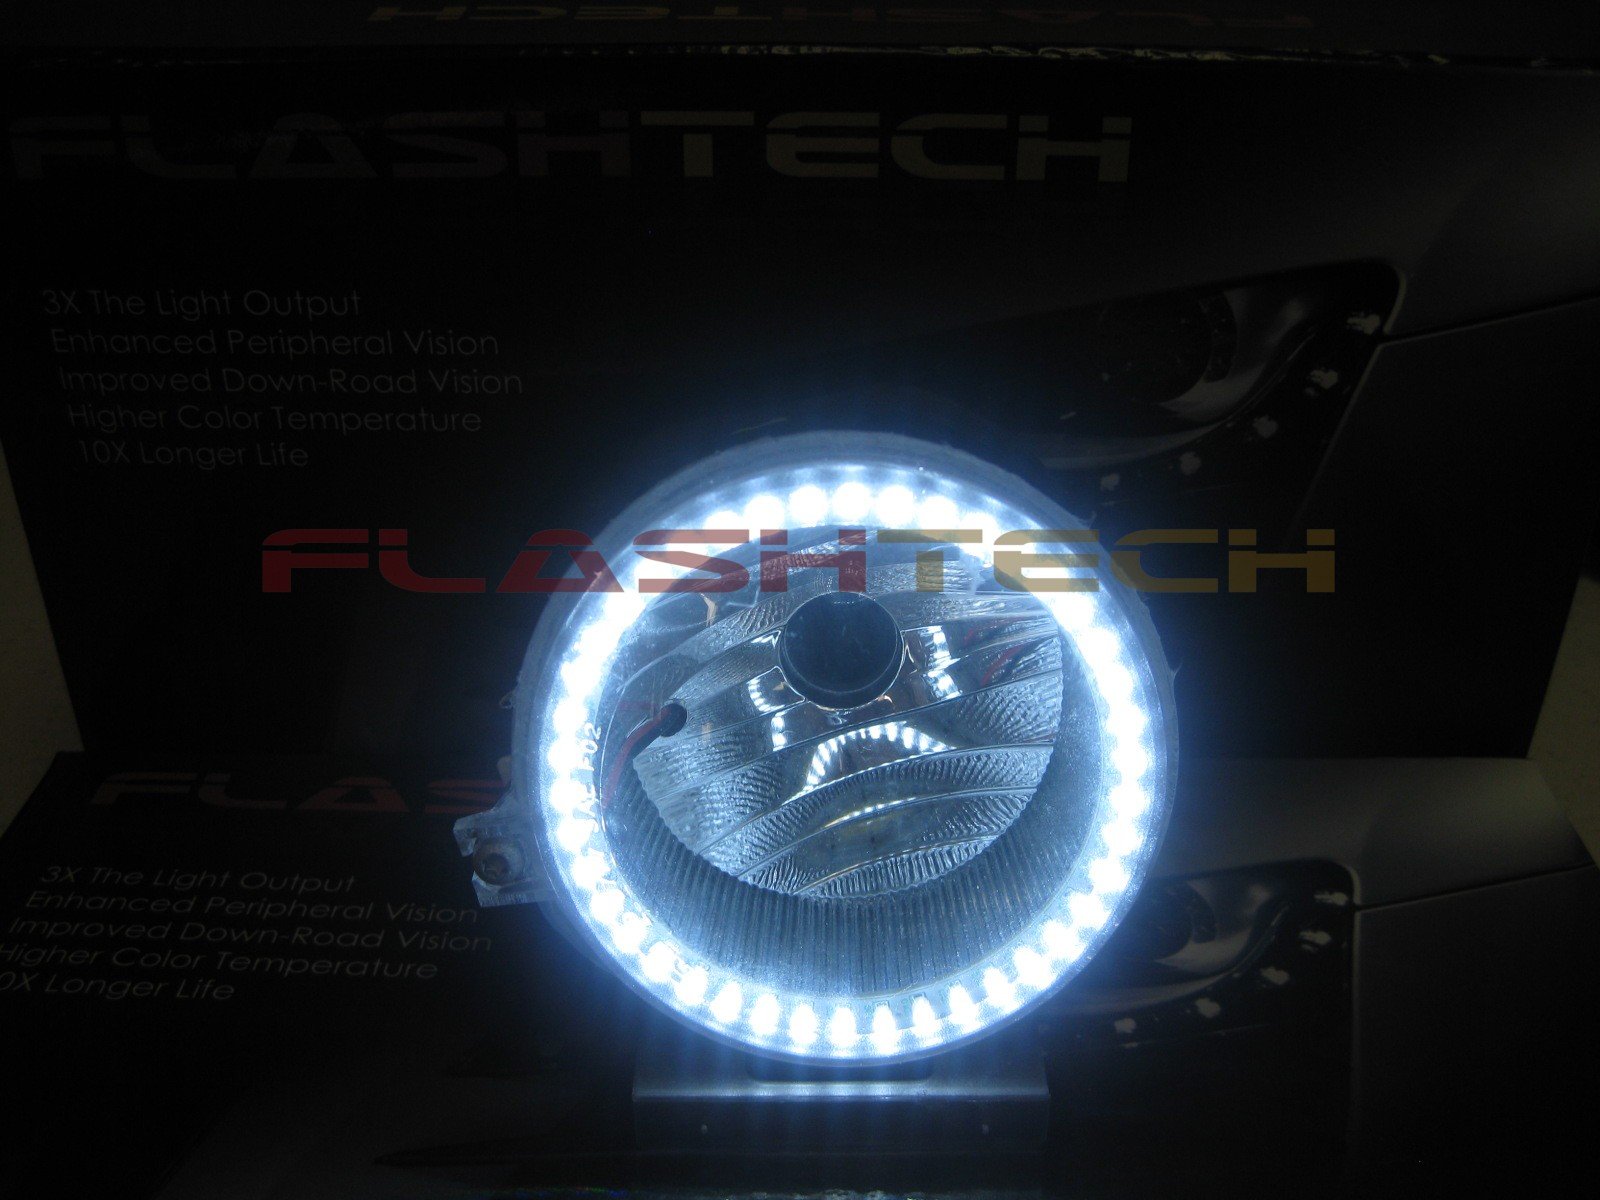 Dodge-Avenger-2008, 2009, 2010-LED-Halo-Fog Lights-White-RF Remote White-DO-AV0810-WFRF